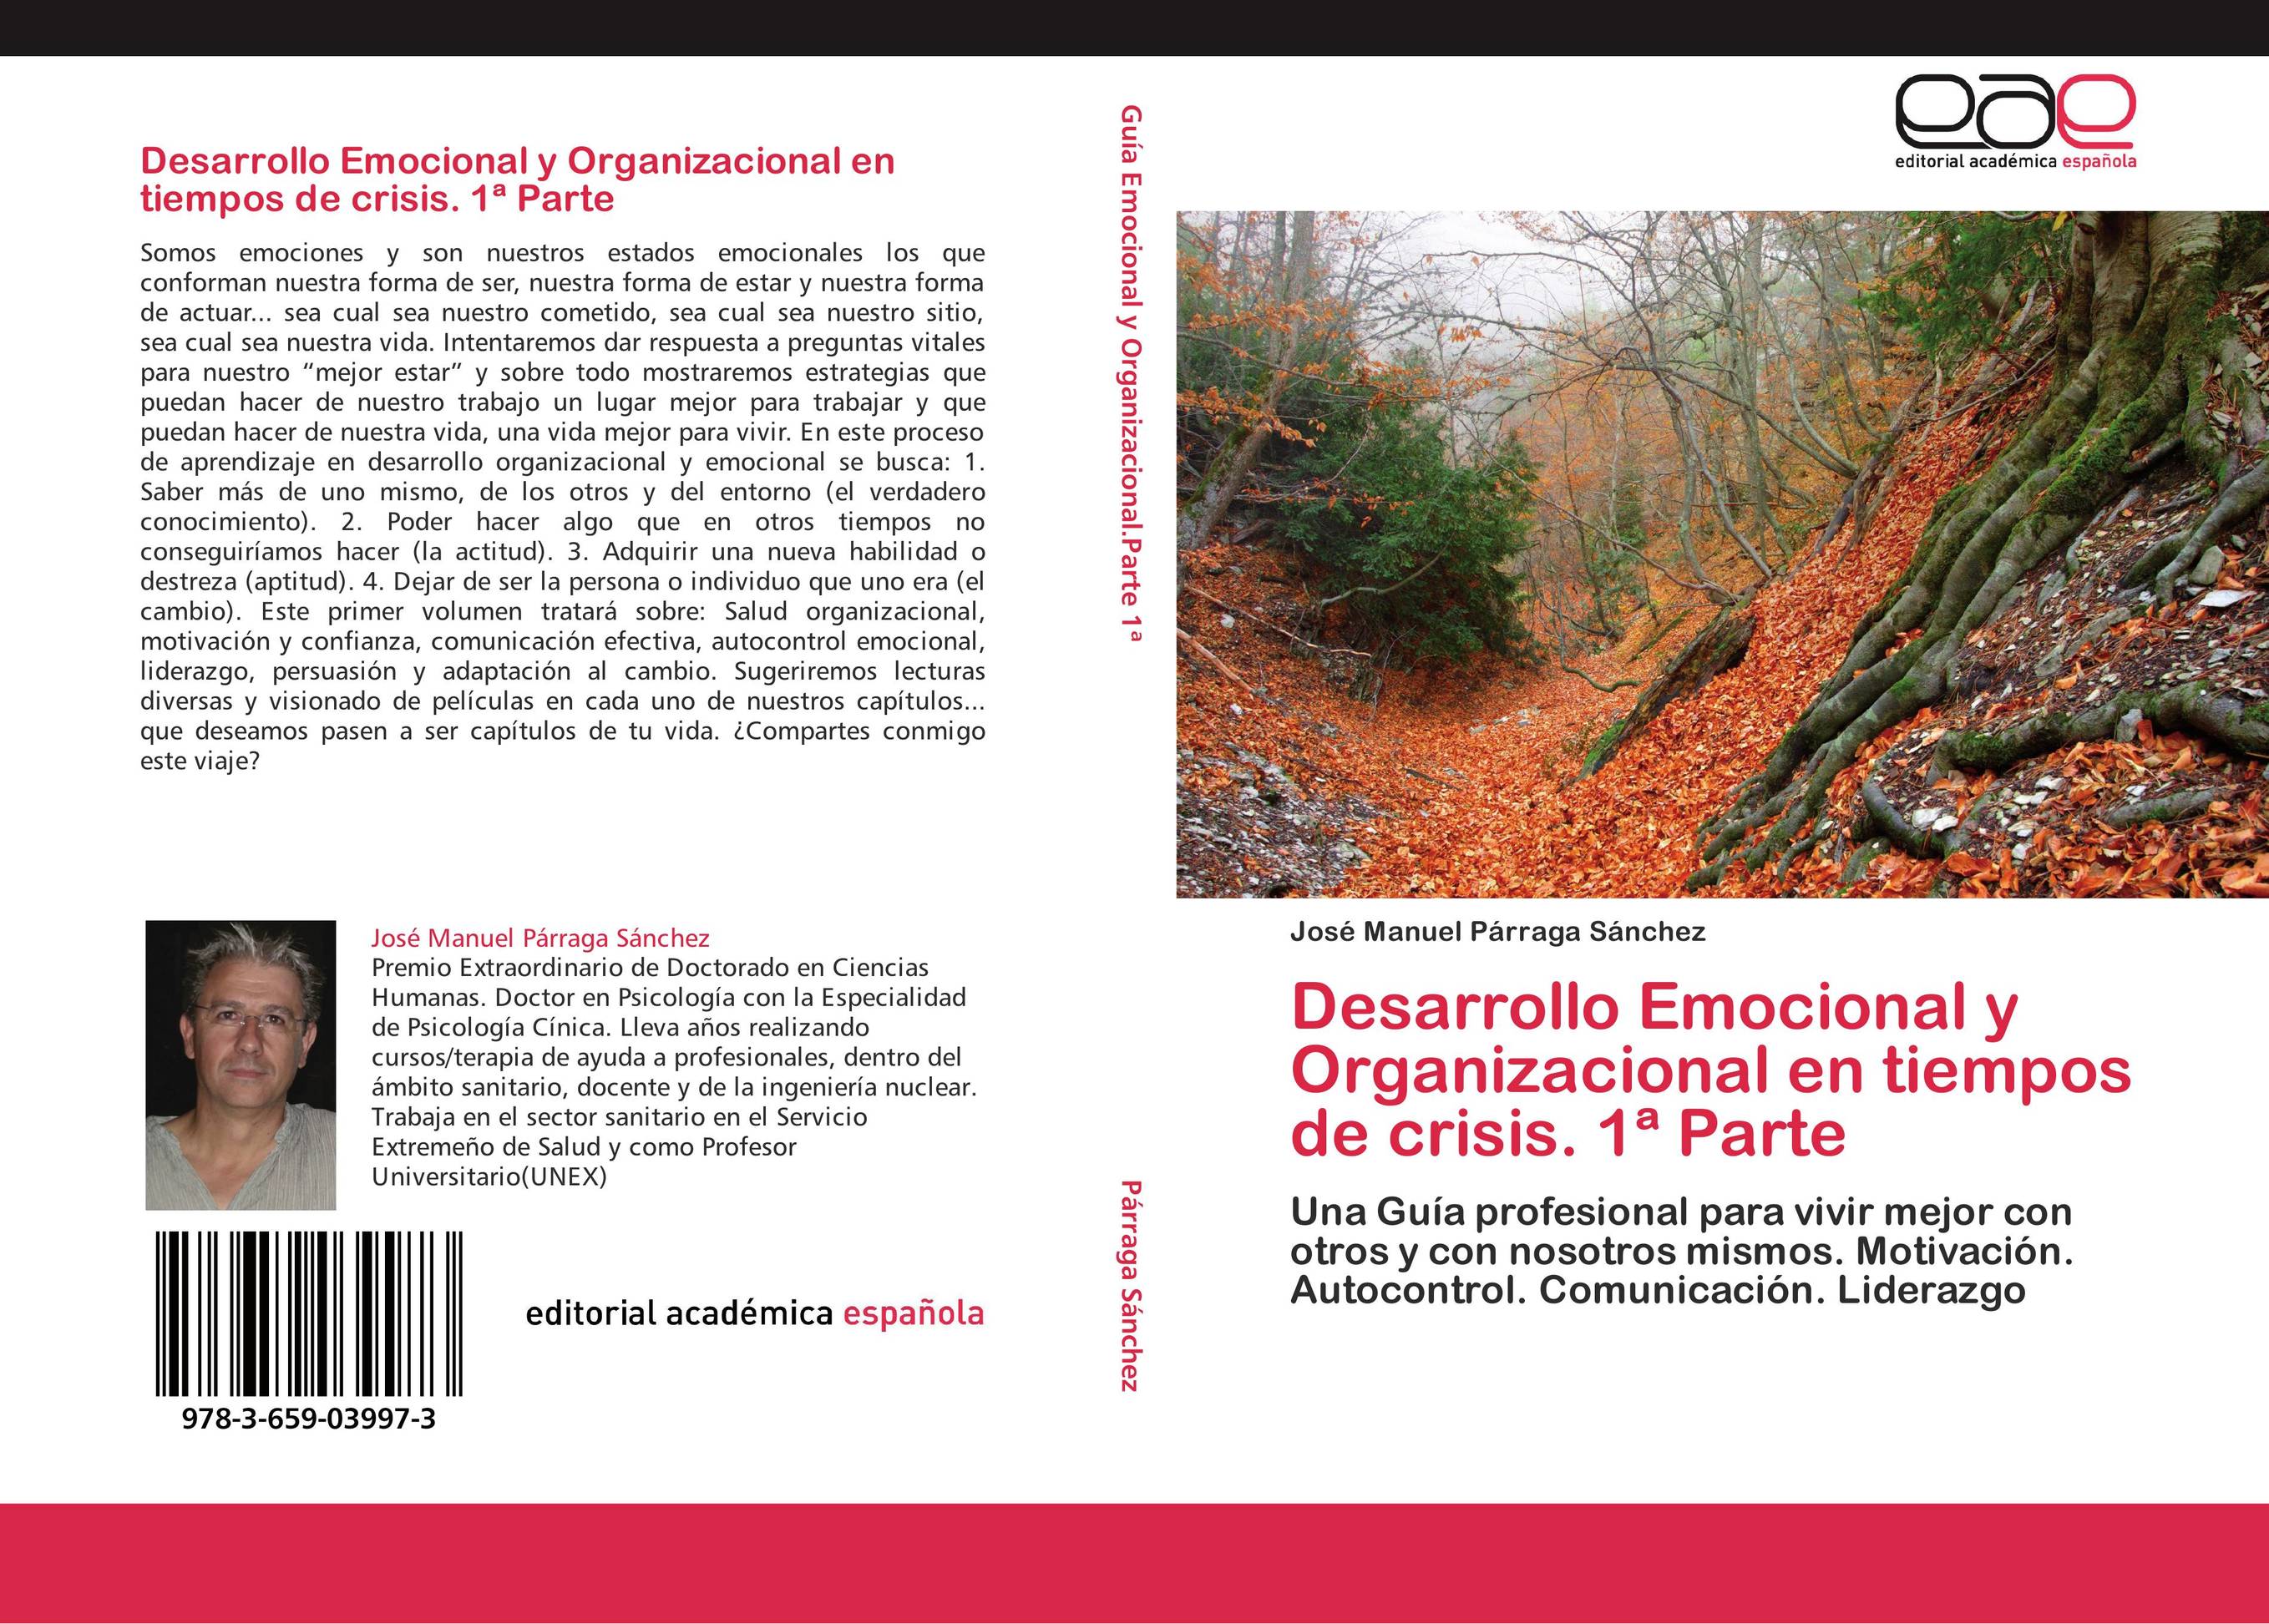 Desarrollo Emocional y Organizacional en tiempos de crisis. 1ª Parte